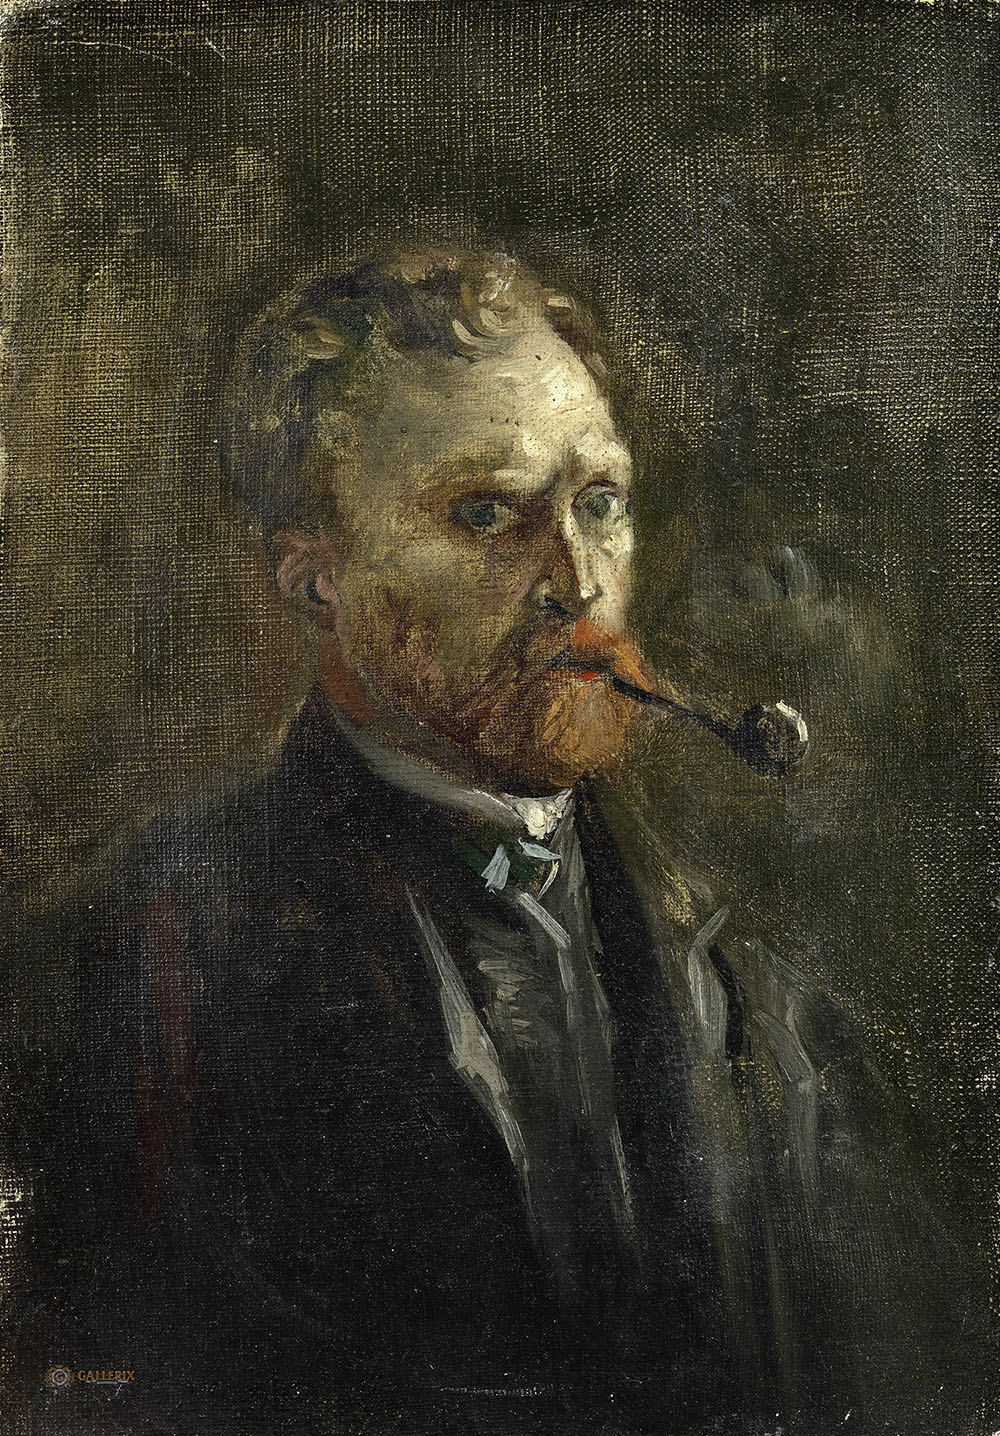 Винсент Ван Гог. "Автопортрет с трубкой". 1886. Музей Ван Гога, Амстердам.